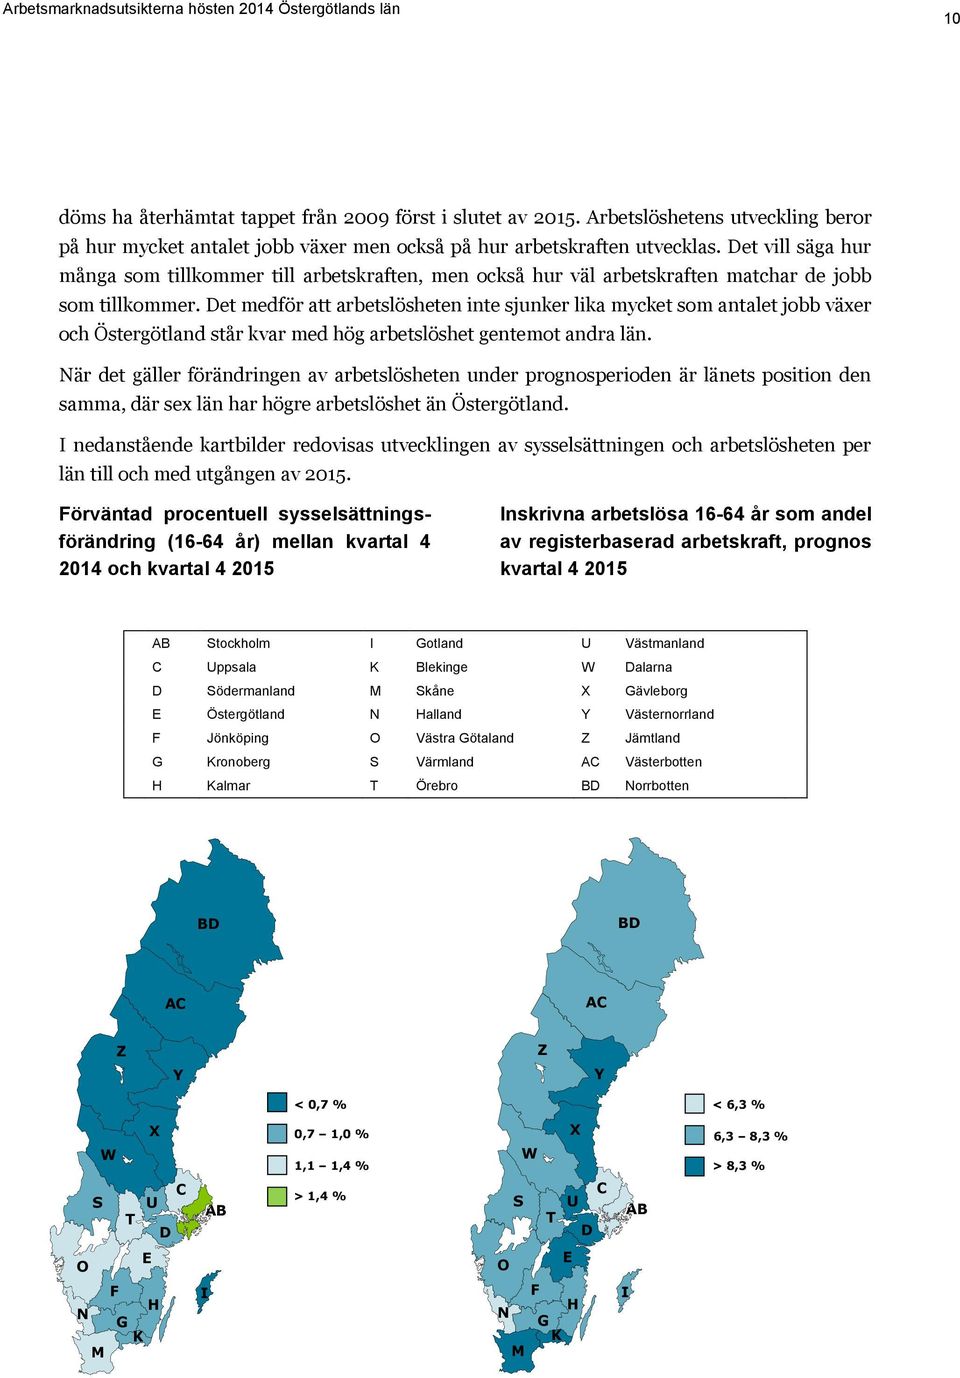 Det medför att arbetslösheten inte sjunker lika mycket som antalet jobb växer och Östergötland står kvar med hög arbetslöshet gentemot andra län.